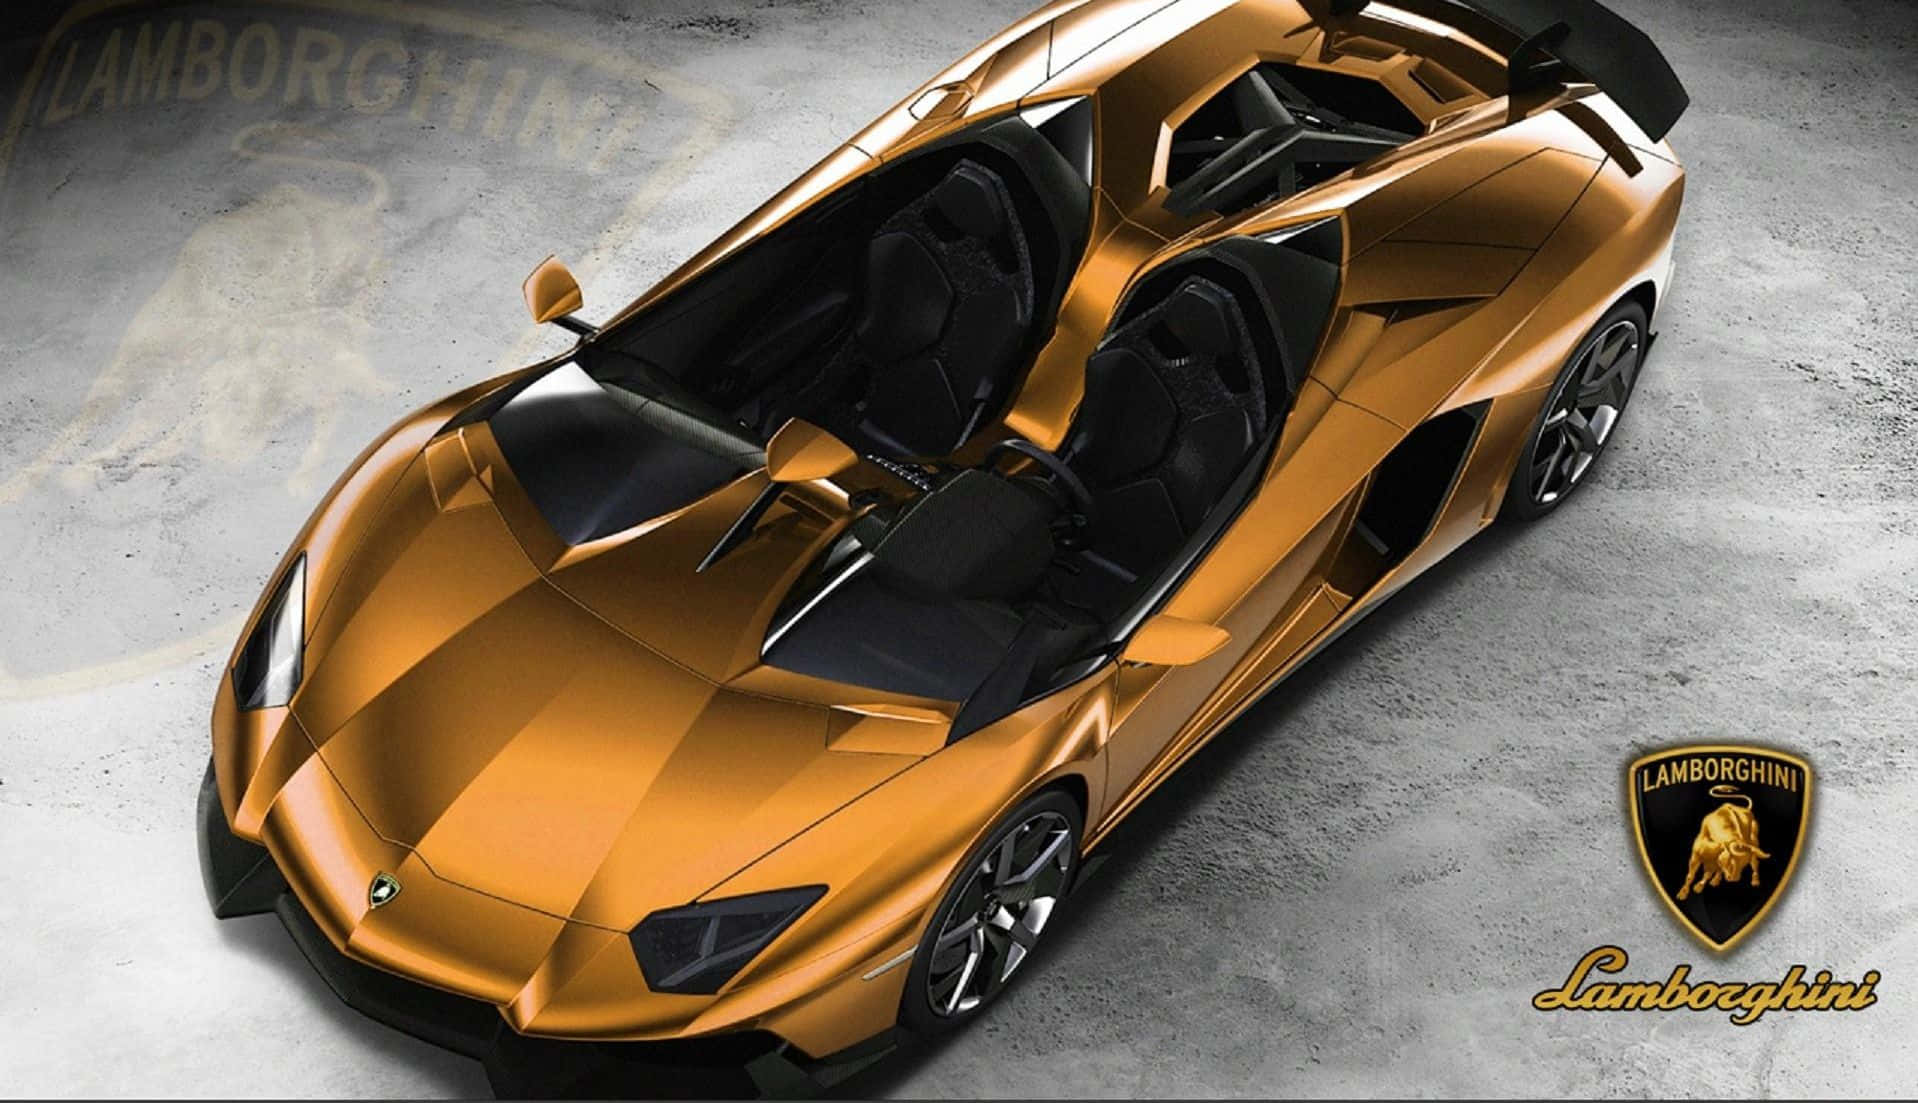 Genießeden Luxus Eines Goldenen Lamborghinis. Wallpaper